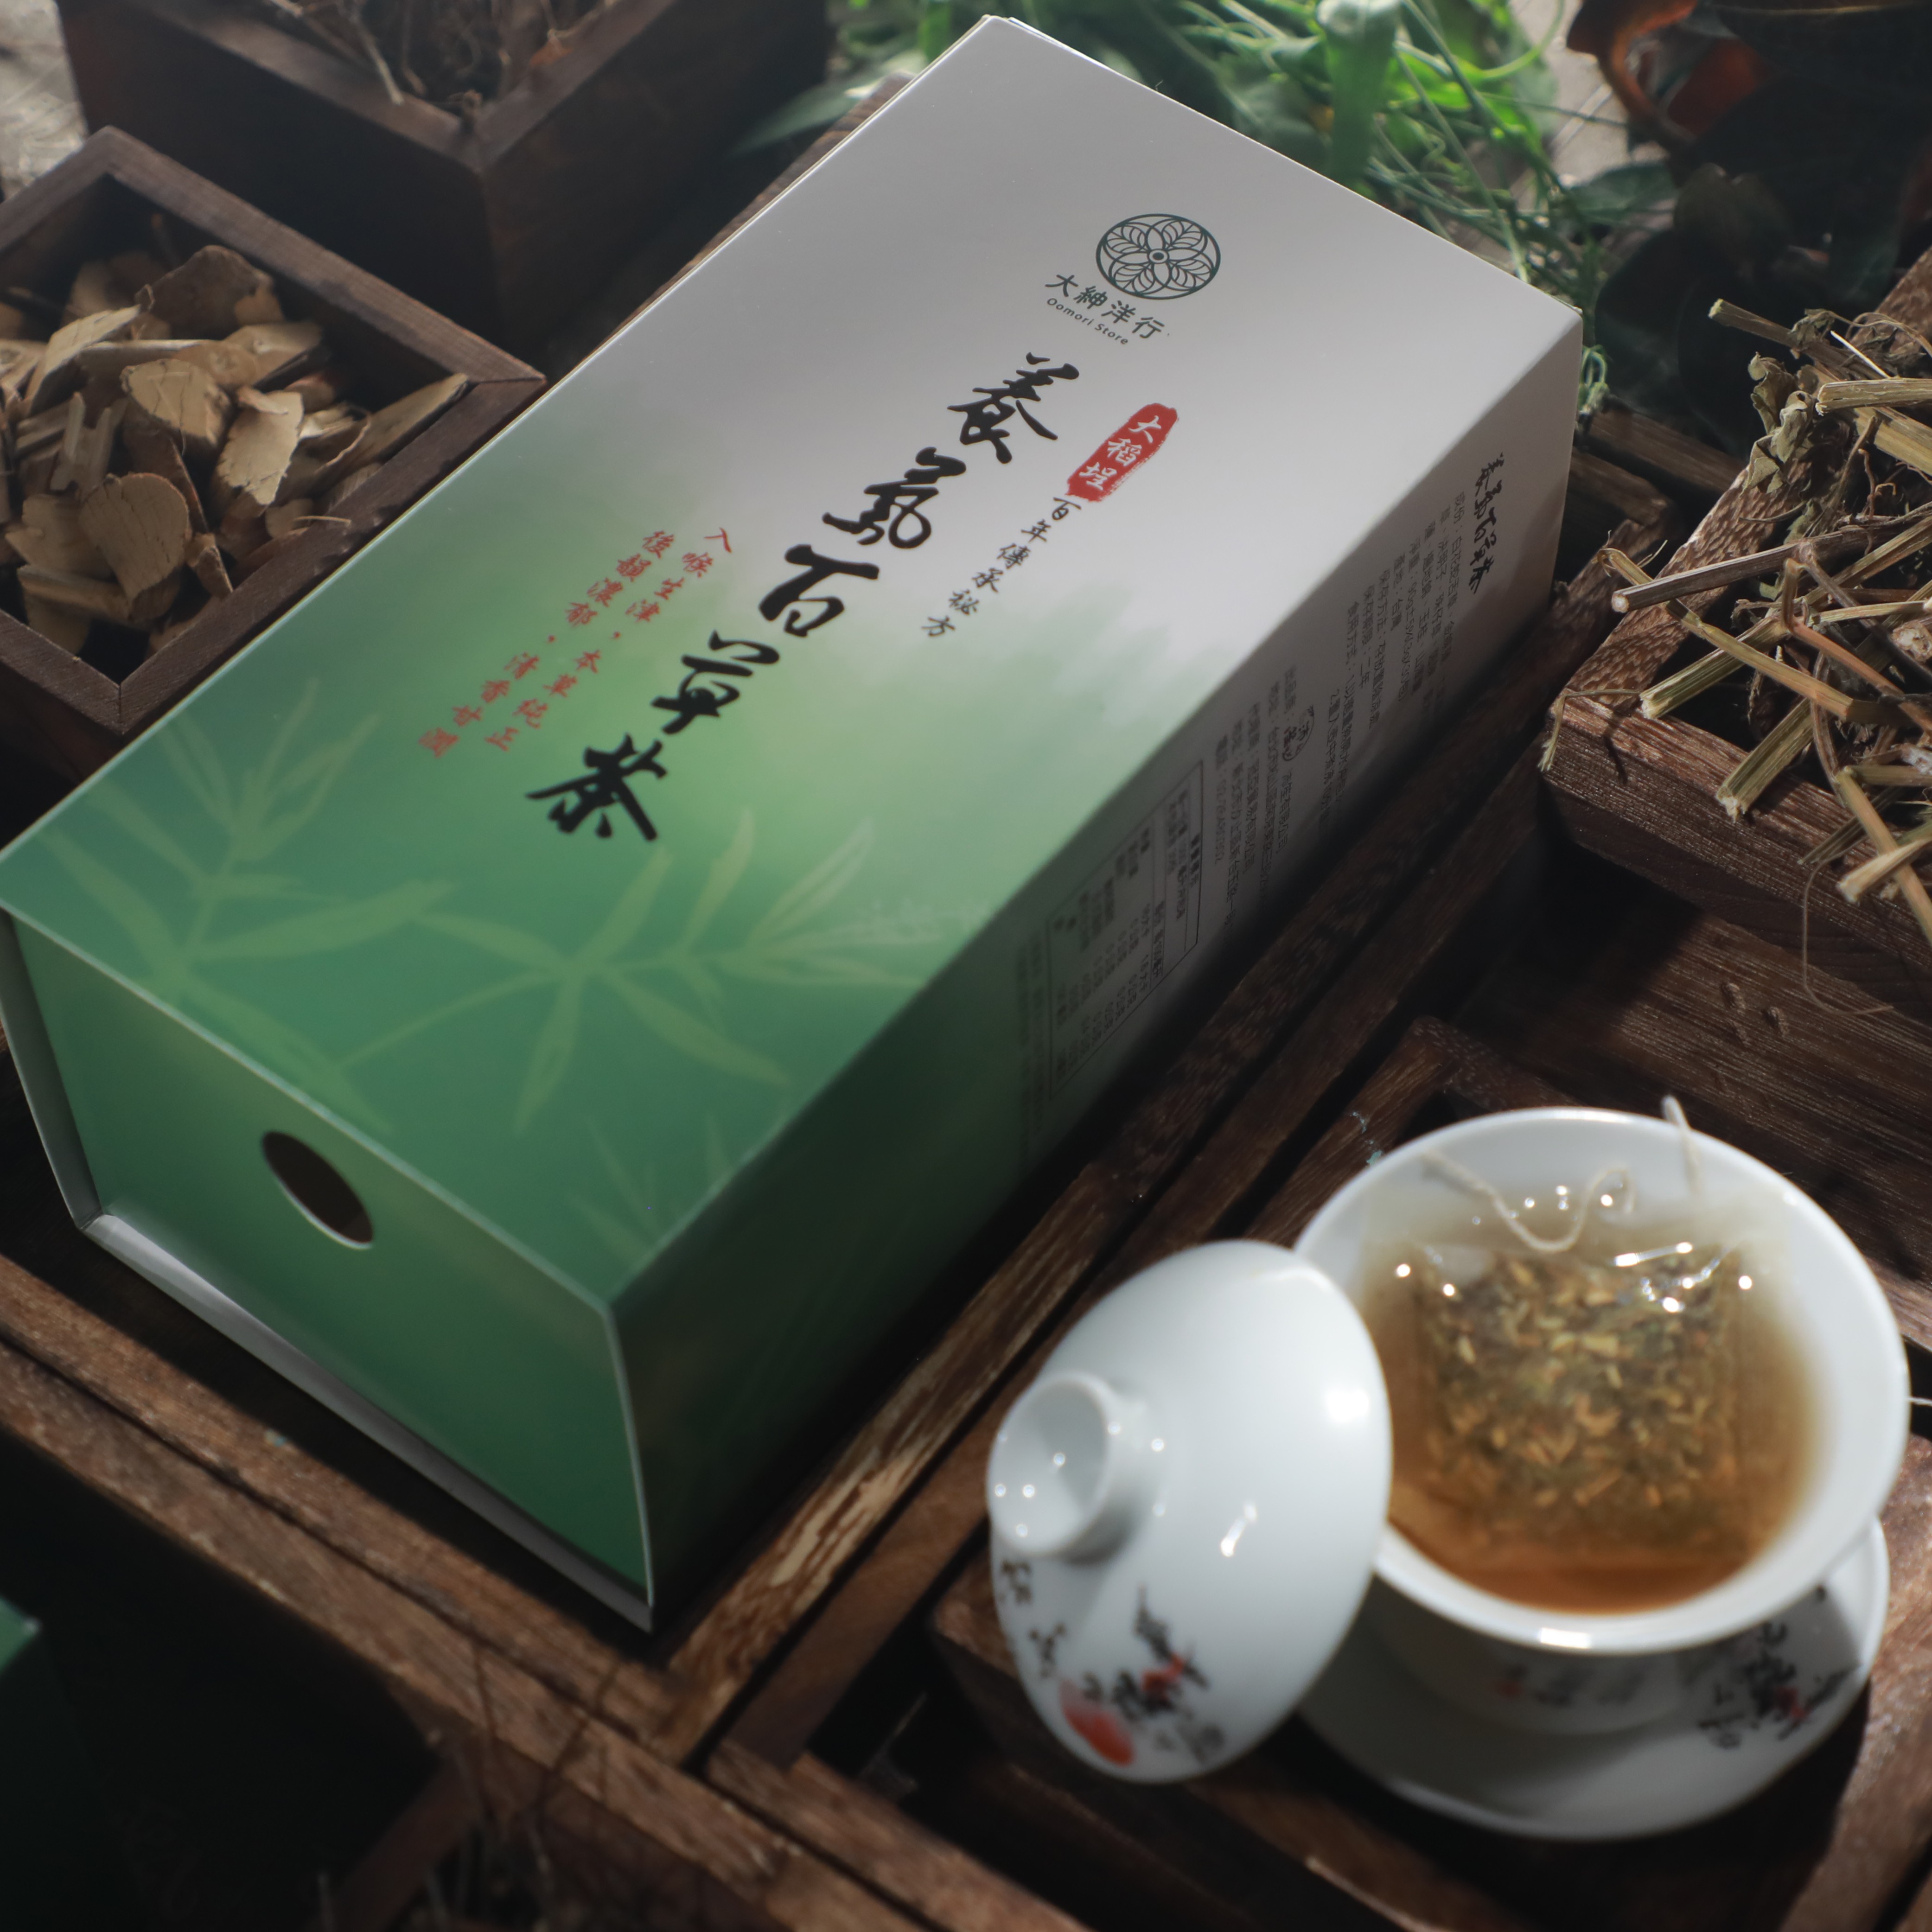 迪化街百年傳承秘方養氣百草茶